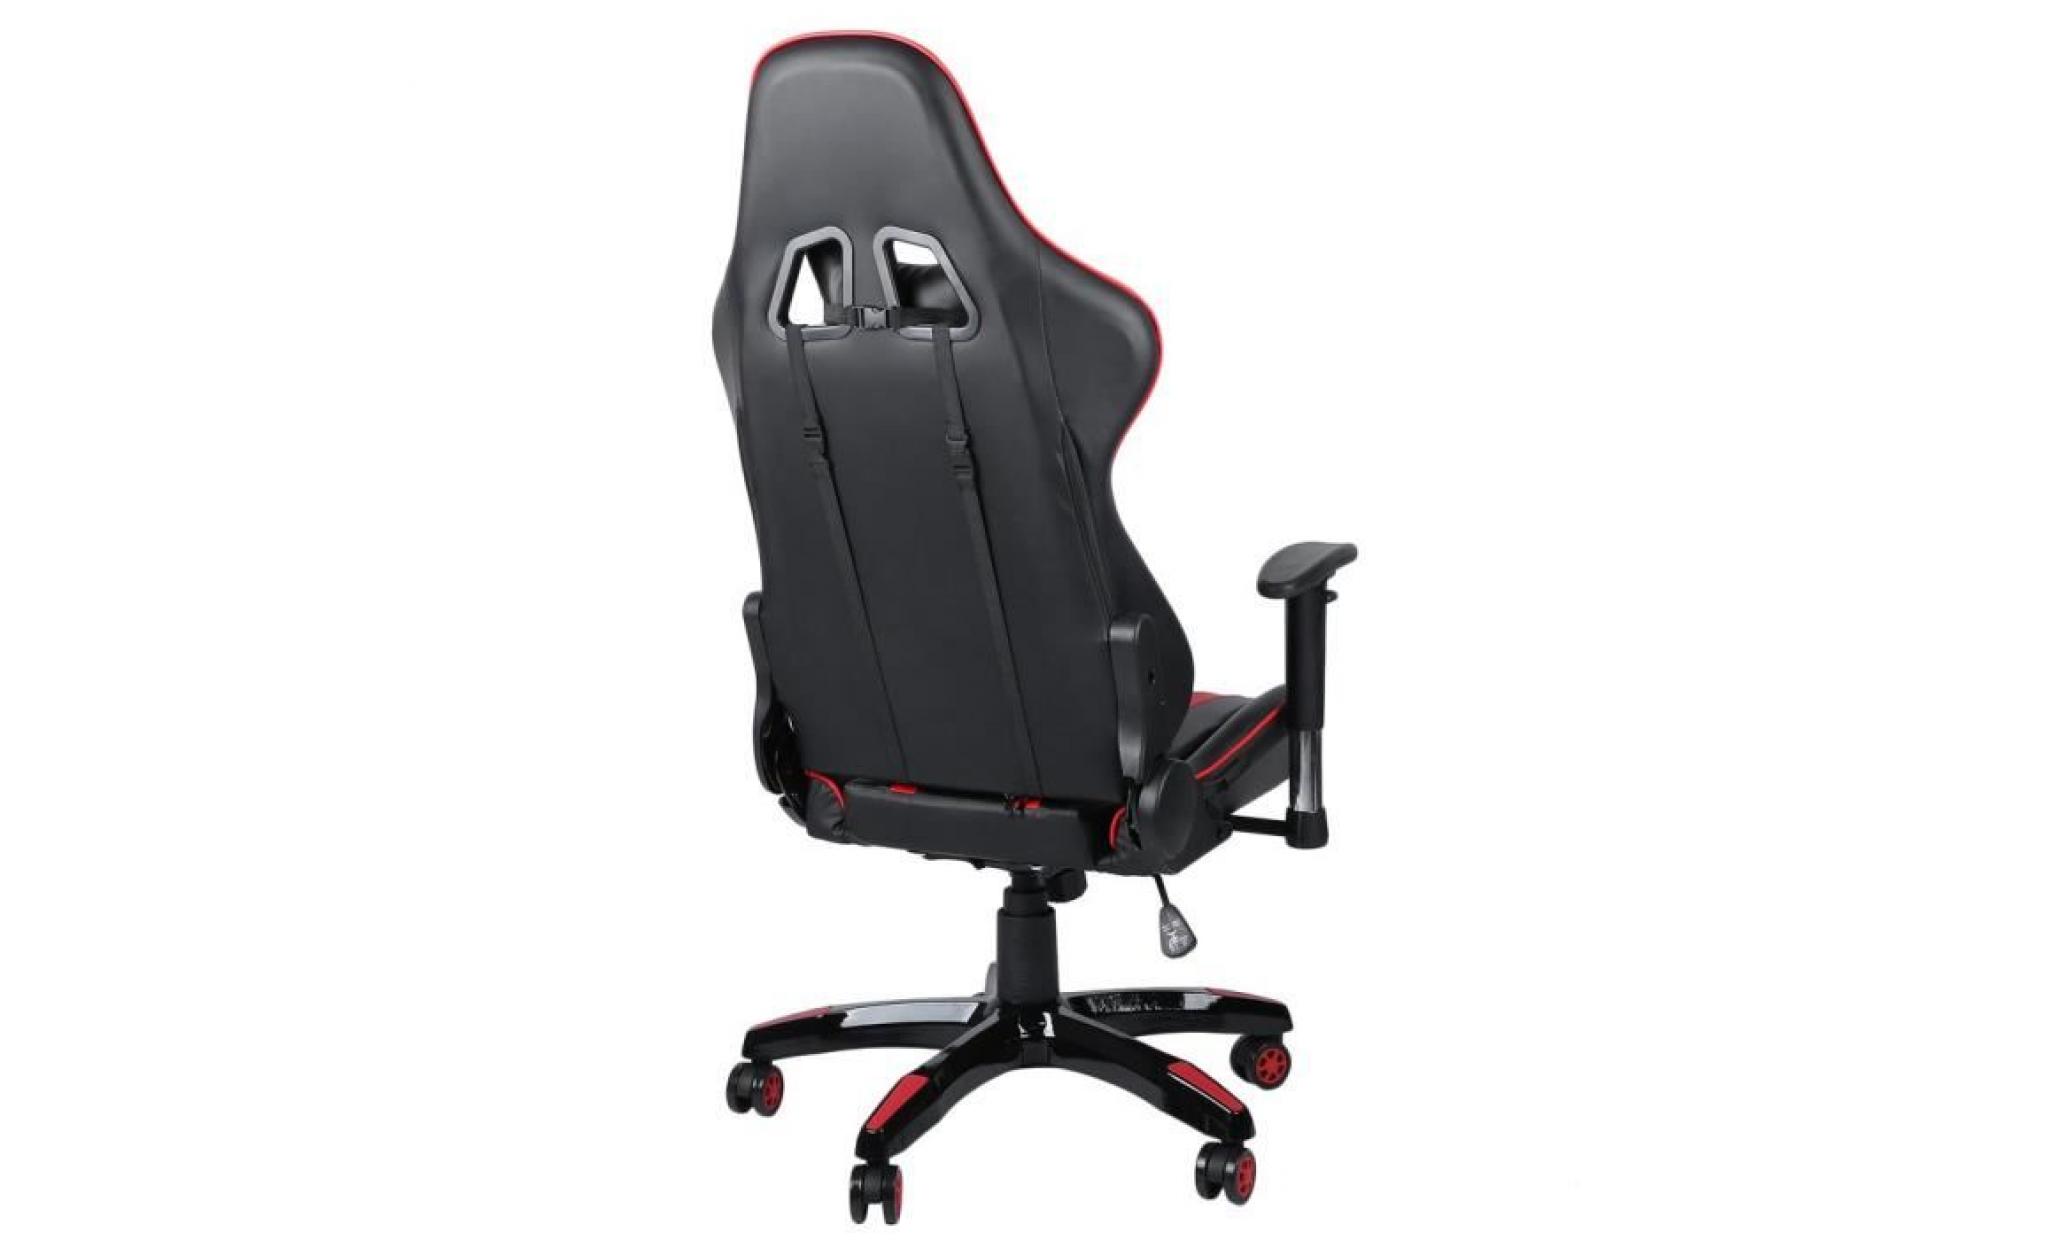 noir+rouge classique design cool fauteuil de jeu pu cuir chaise de cybercafé bureau maison anti fatigue pas cher